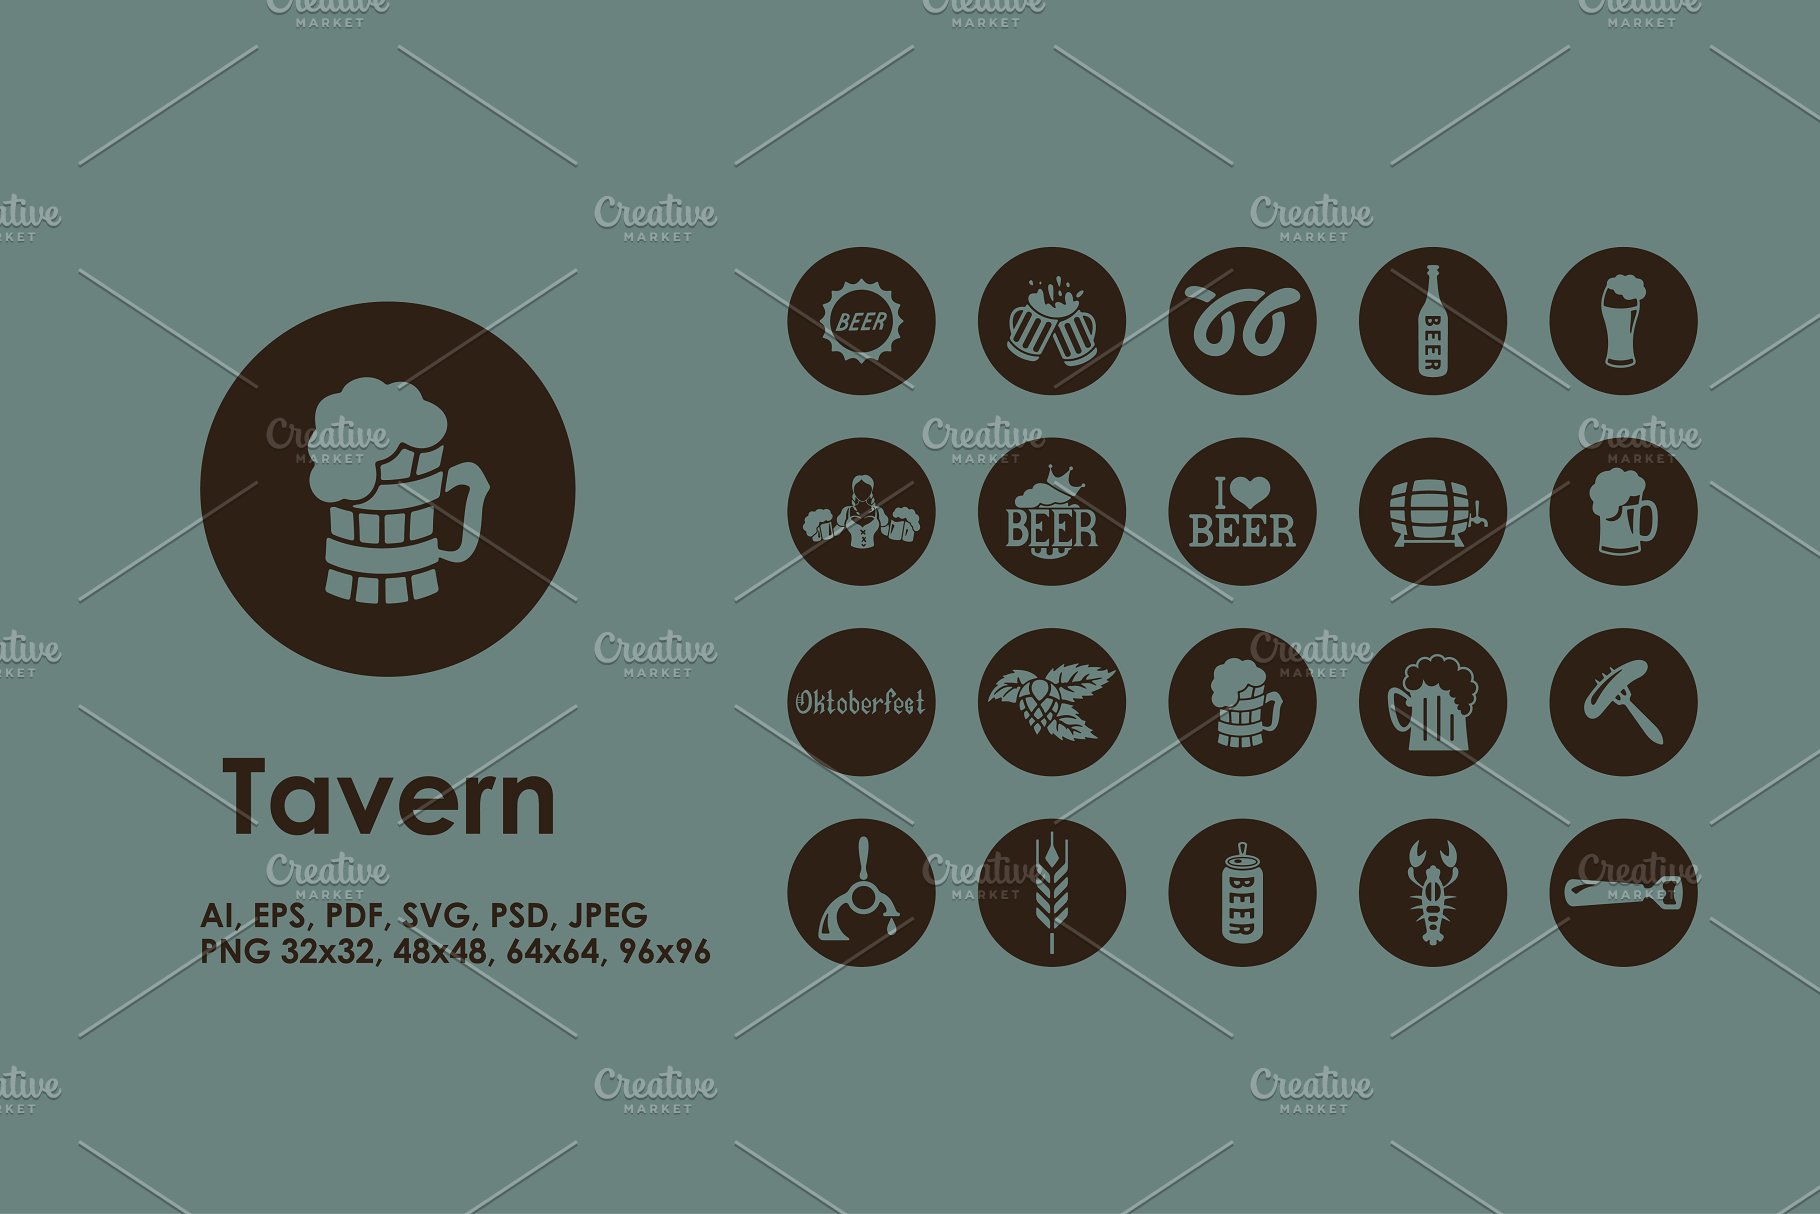 酒馆图标 Tavern icons #91199